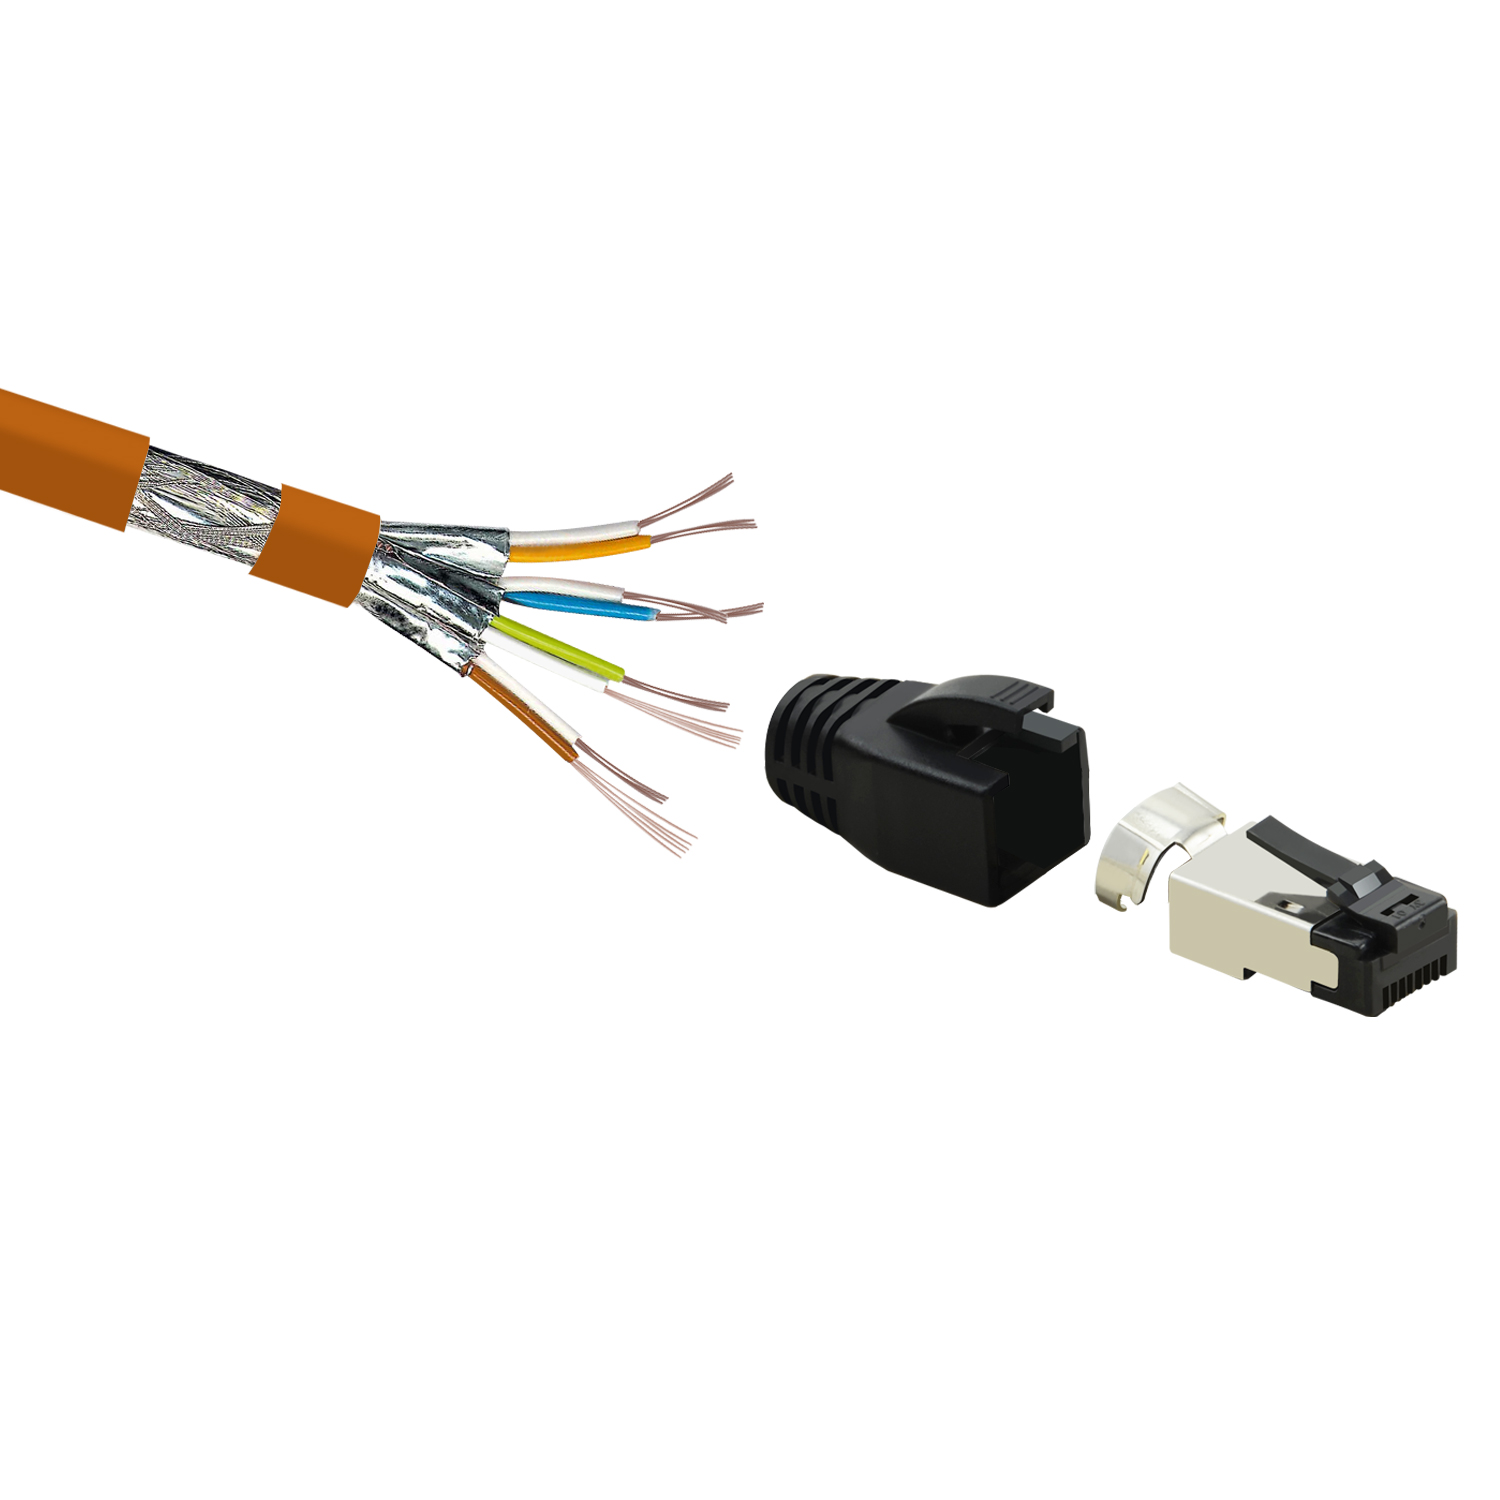 Netzwerkkabel Netzwerkkabel, 10er GBit, m orange, / 40 2m 2 Patchkabel S/FTP TPFNET Pack